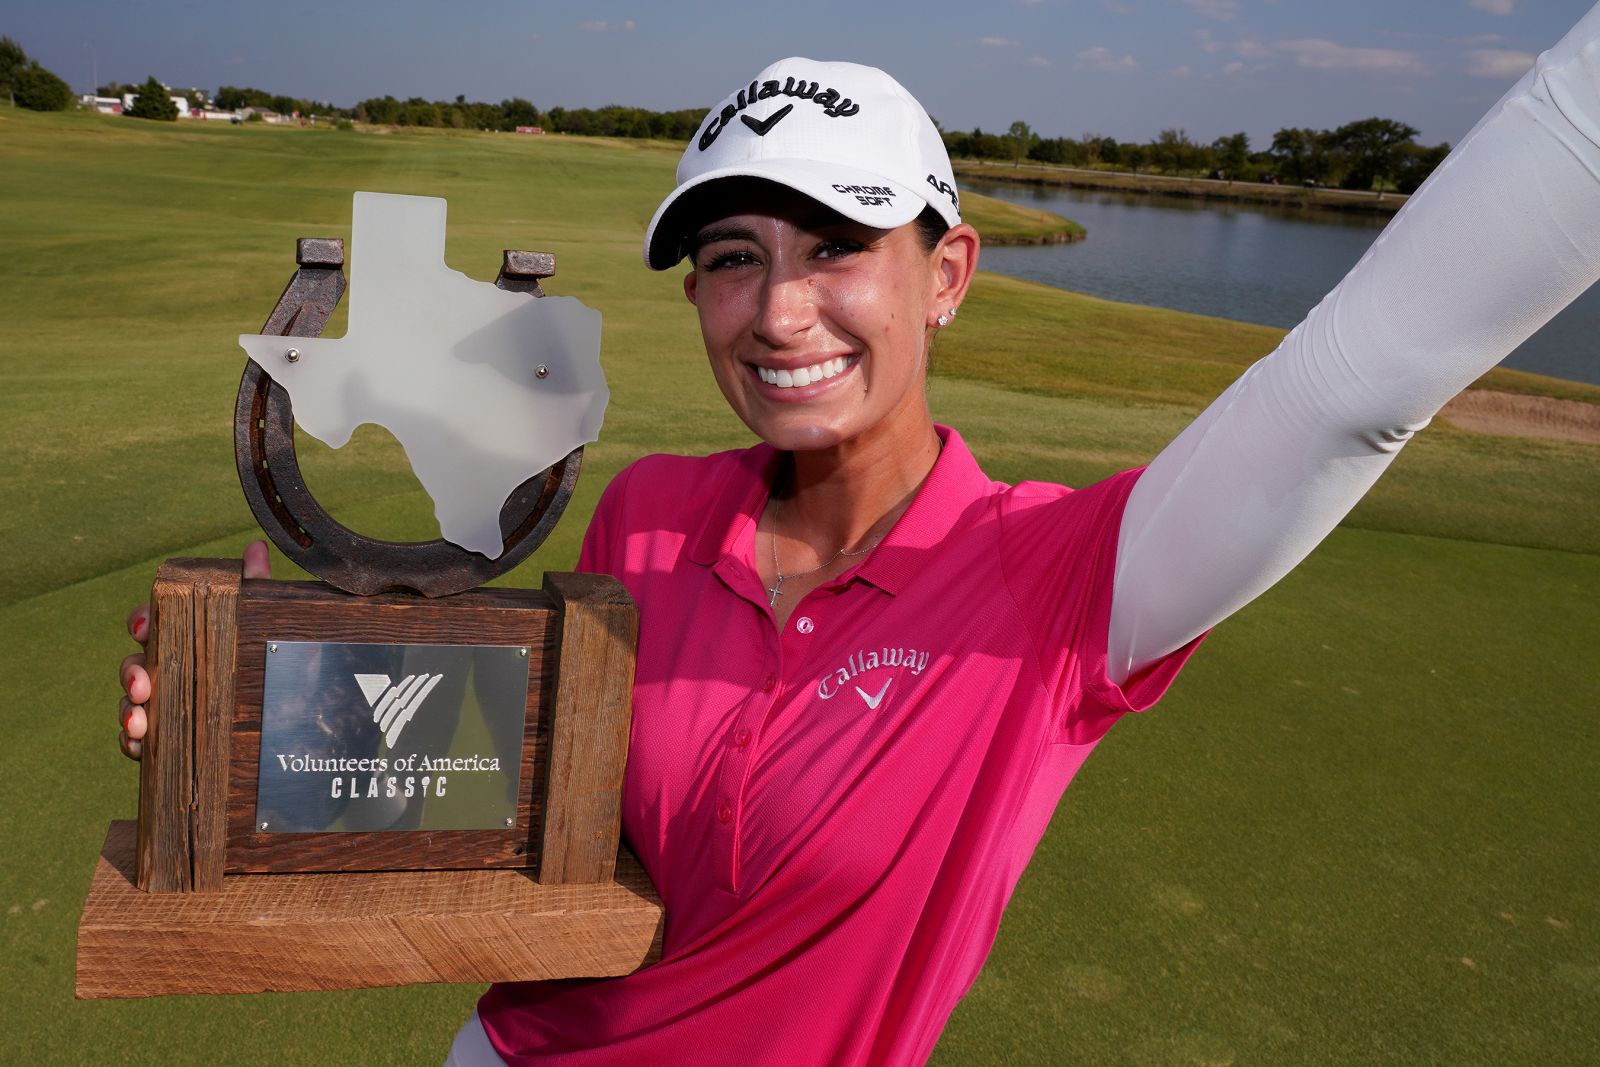 Nữ golfer Cheyenne Knigh chiến thắng giải LPGA trên sân nhà